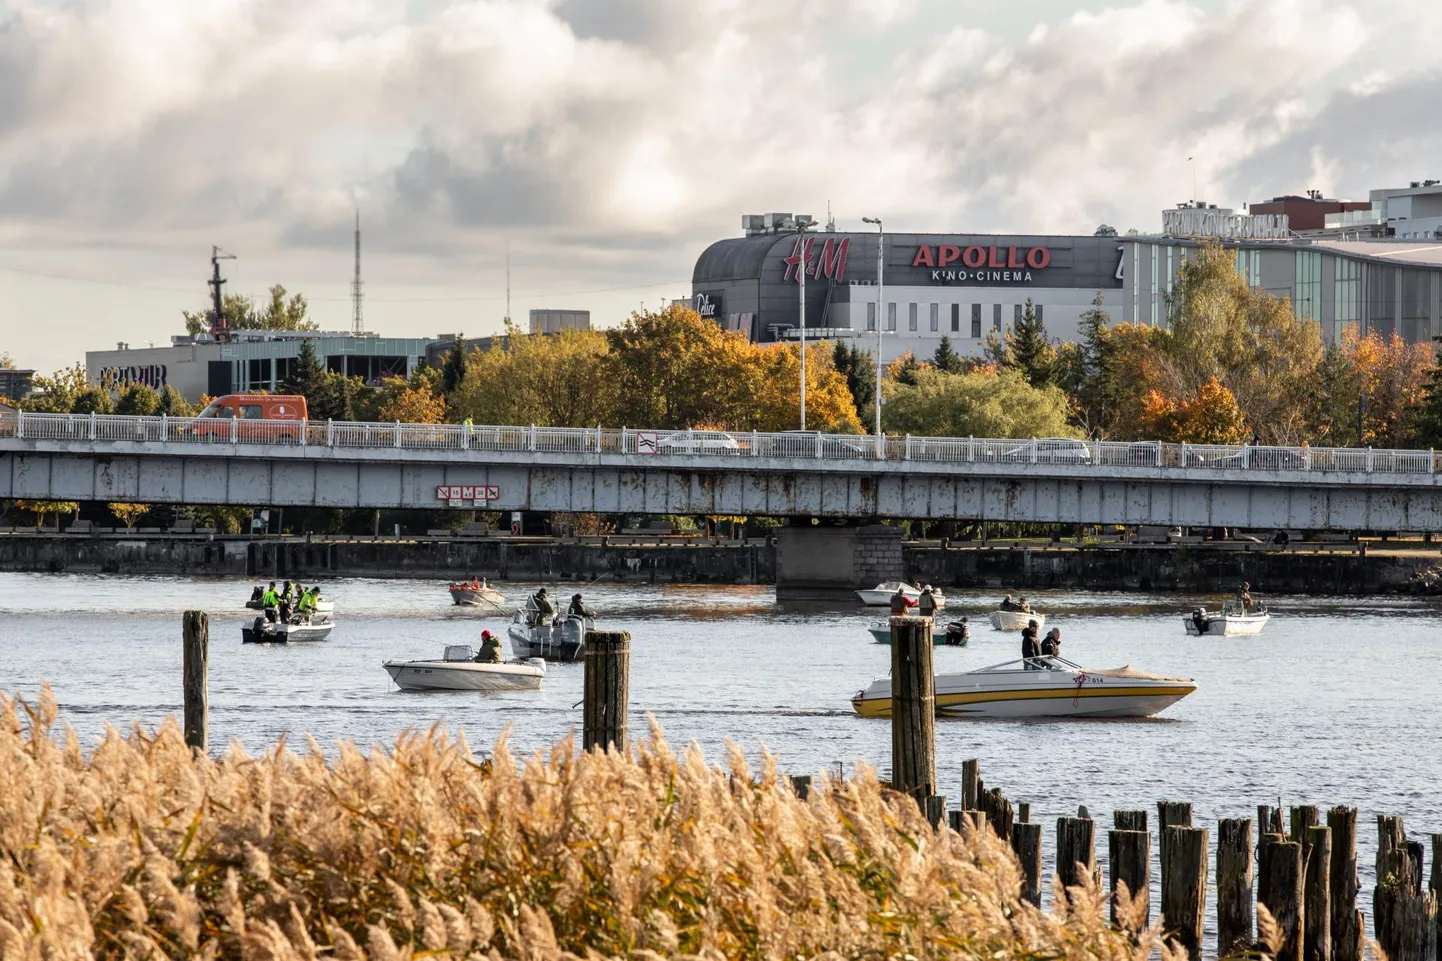 Täna hommikul Pärnu Kesklinna silda ületanule avanes ebatavaline vaatepilt, mis meenutas võistlust või festivali, kus ligikaudu 30 paadist jahtisid kalamehed saaki.